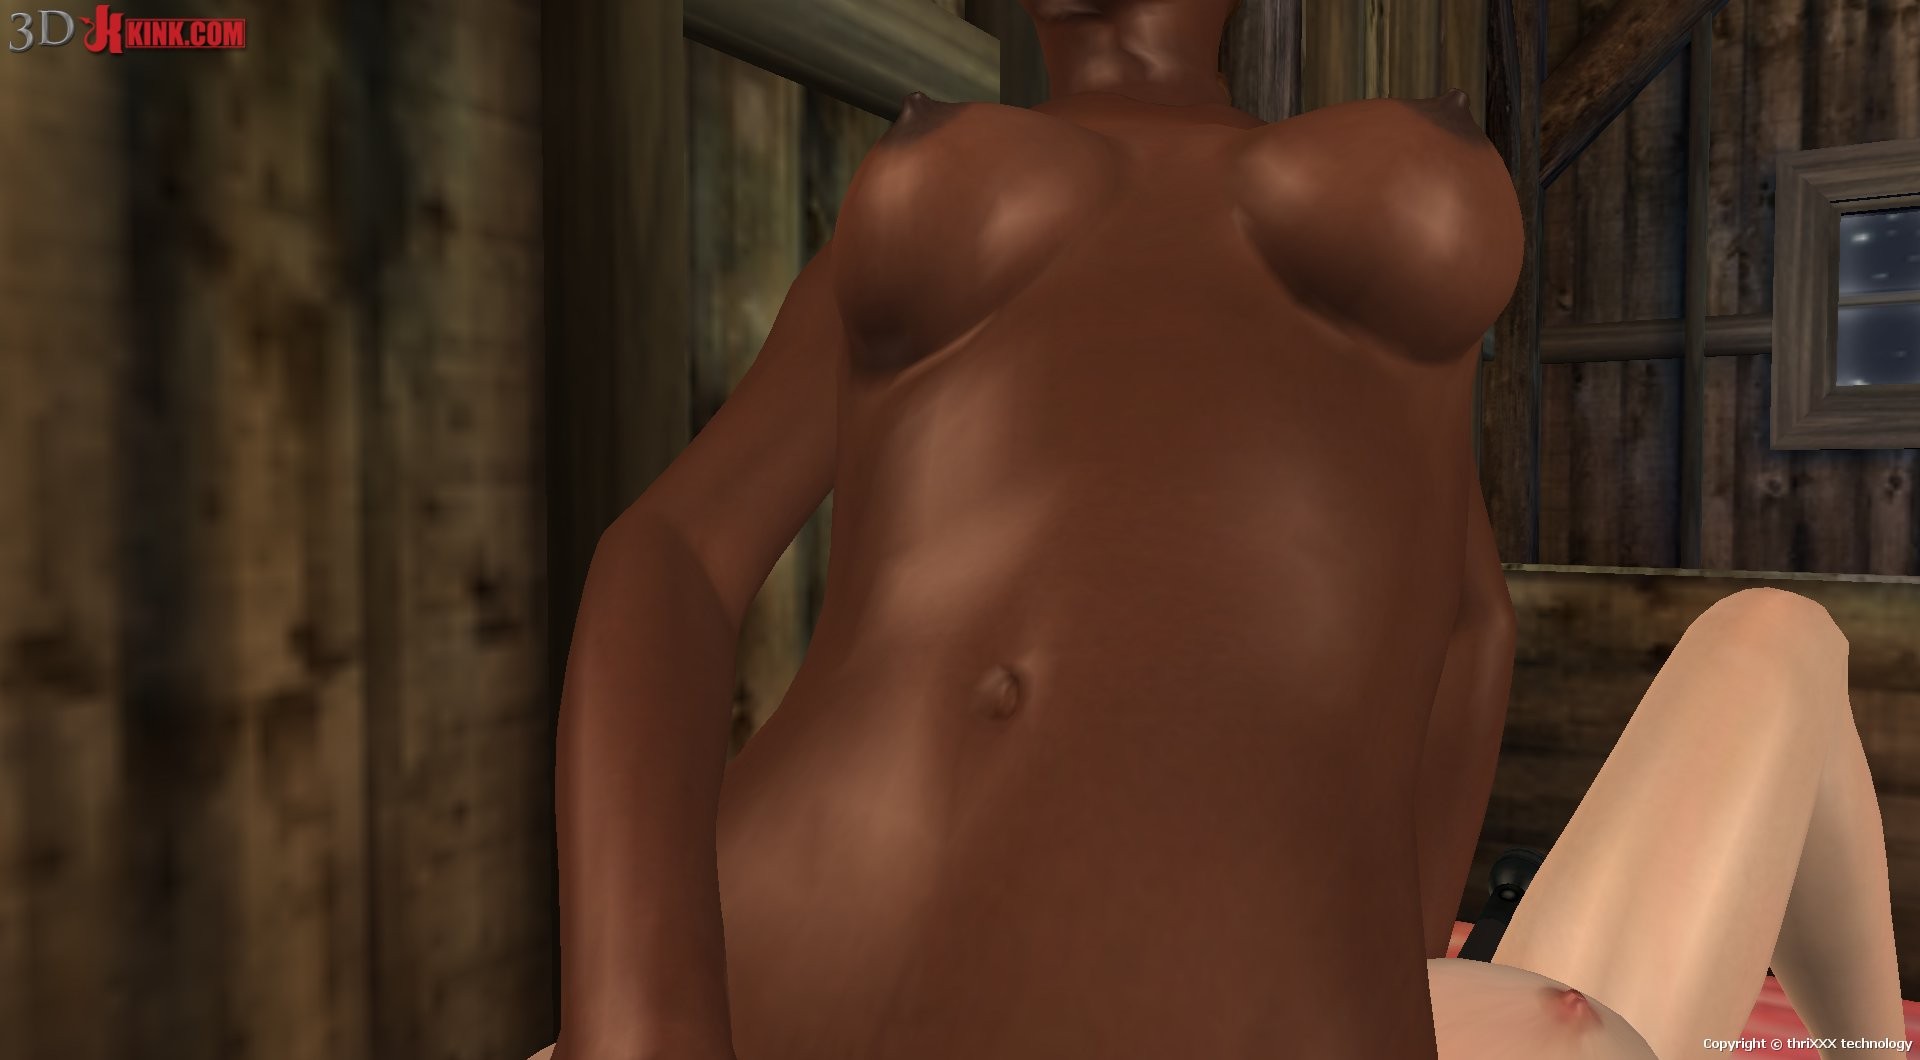 Sexo lésbico interracial creado en un juego de sexo virtual fetichista en 3D.
 #69358938